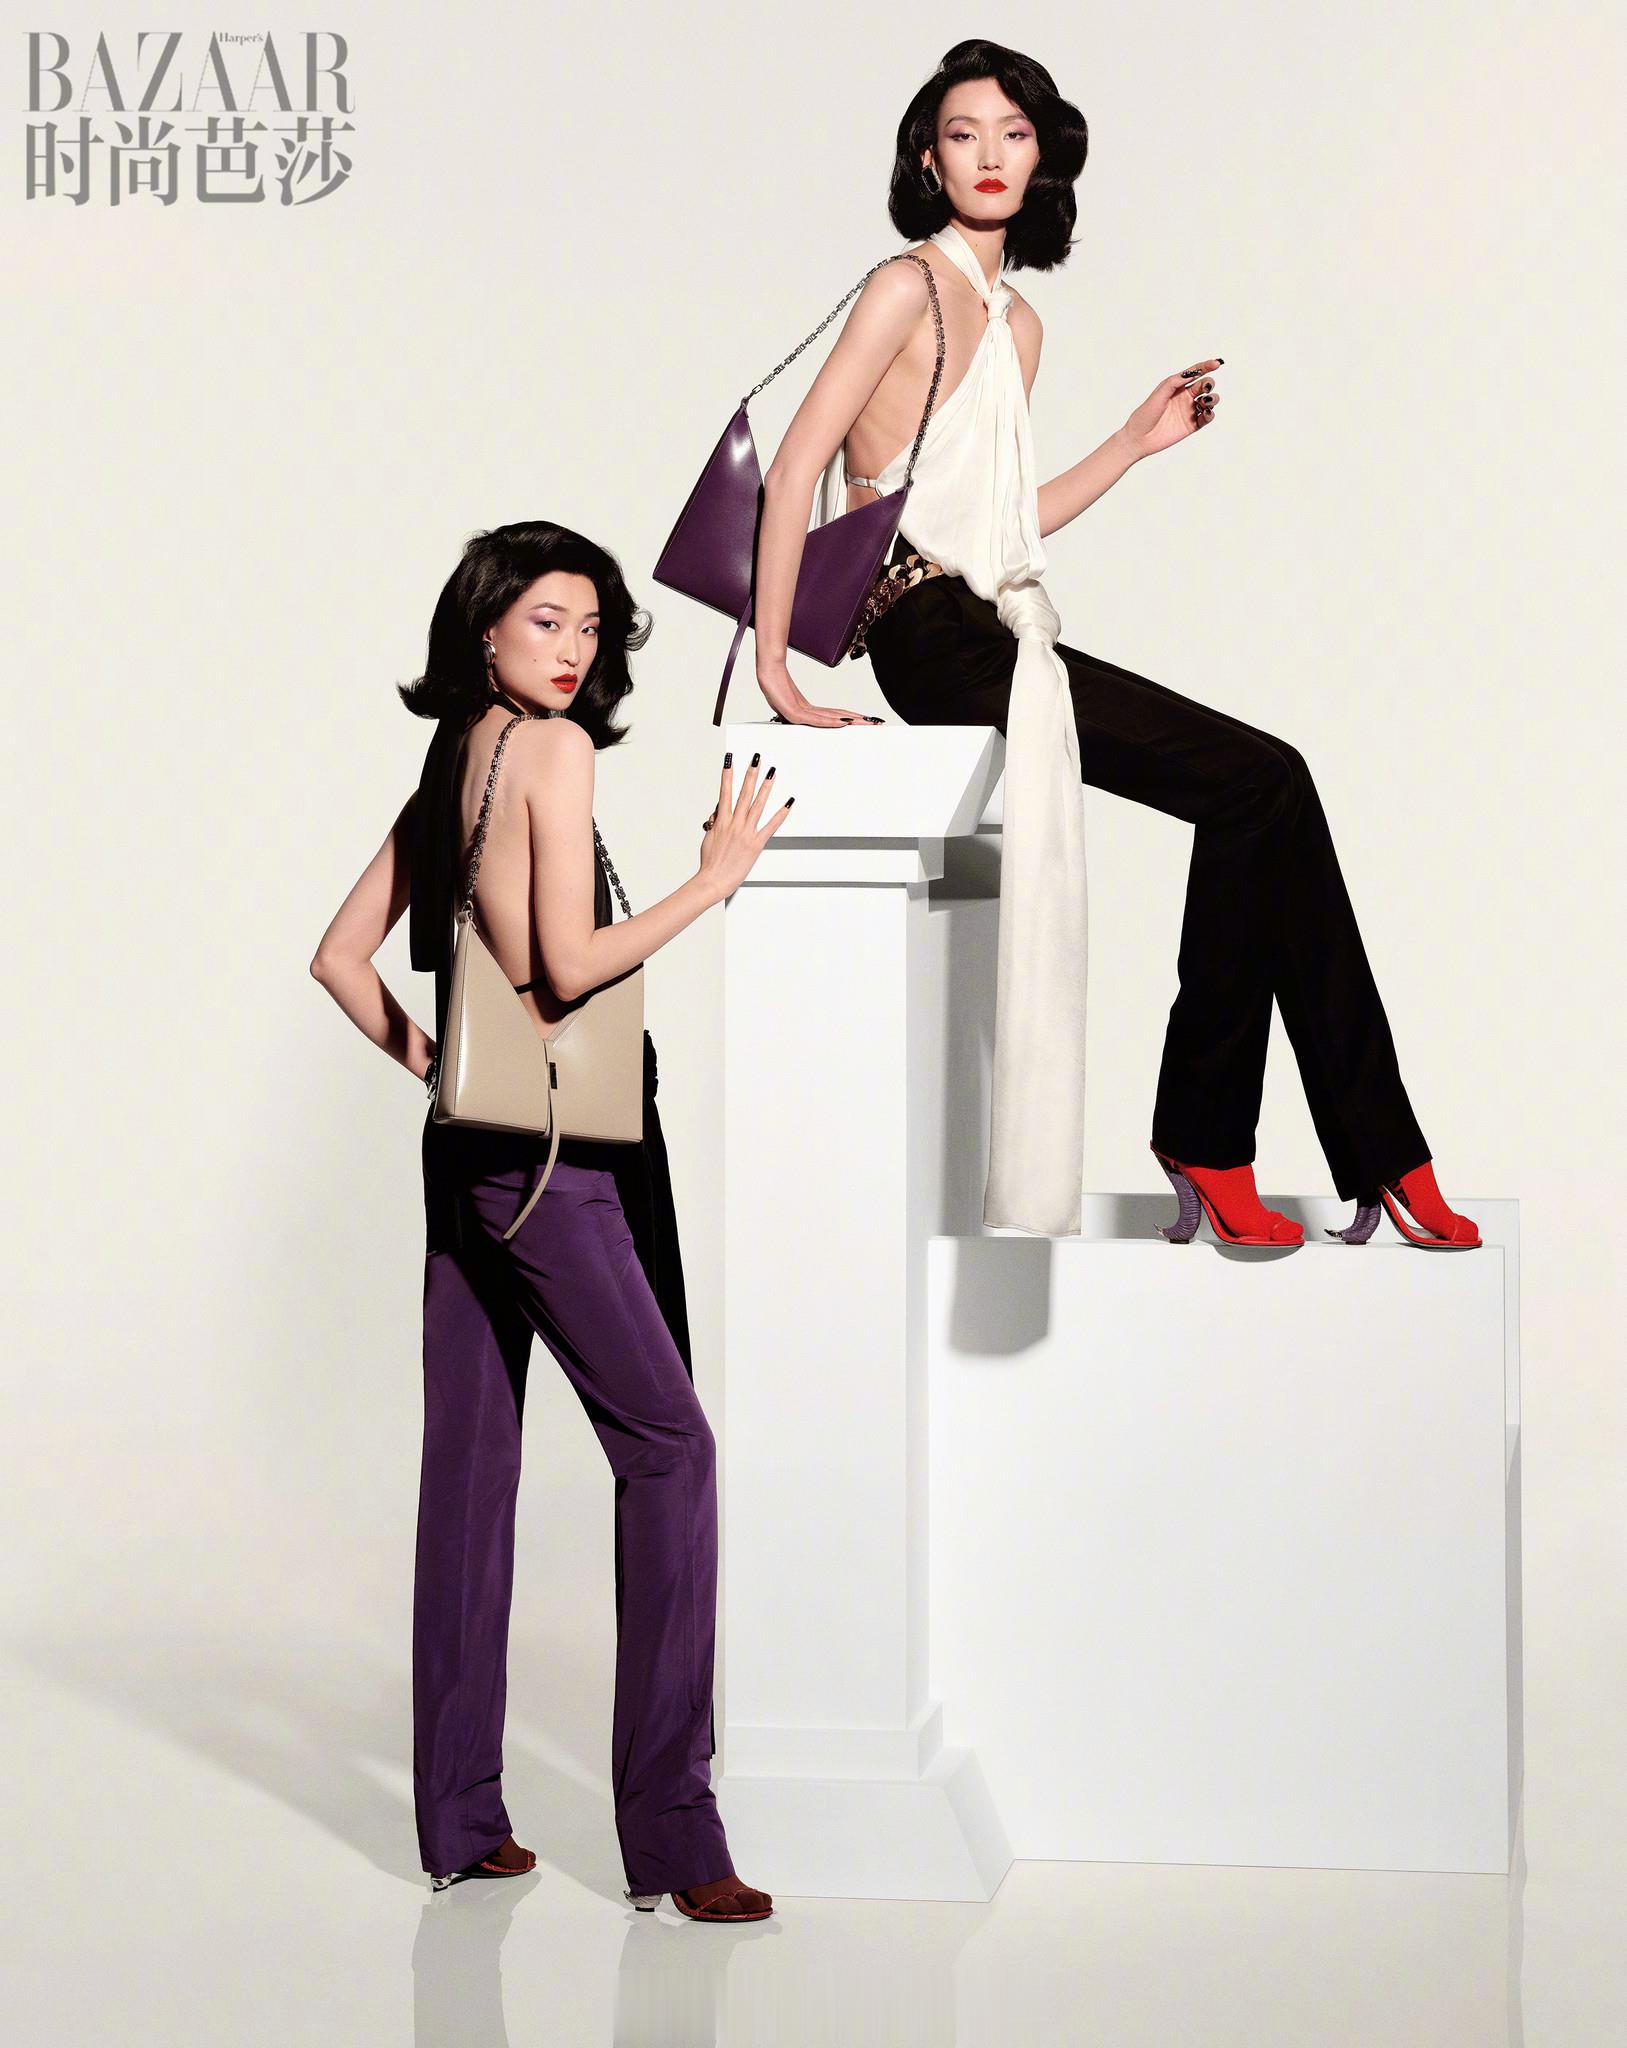 国模登上《时尚芭莎》三月开季刊封面